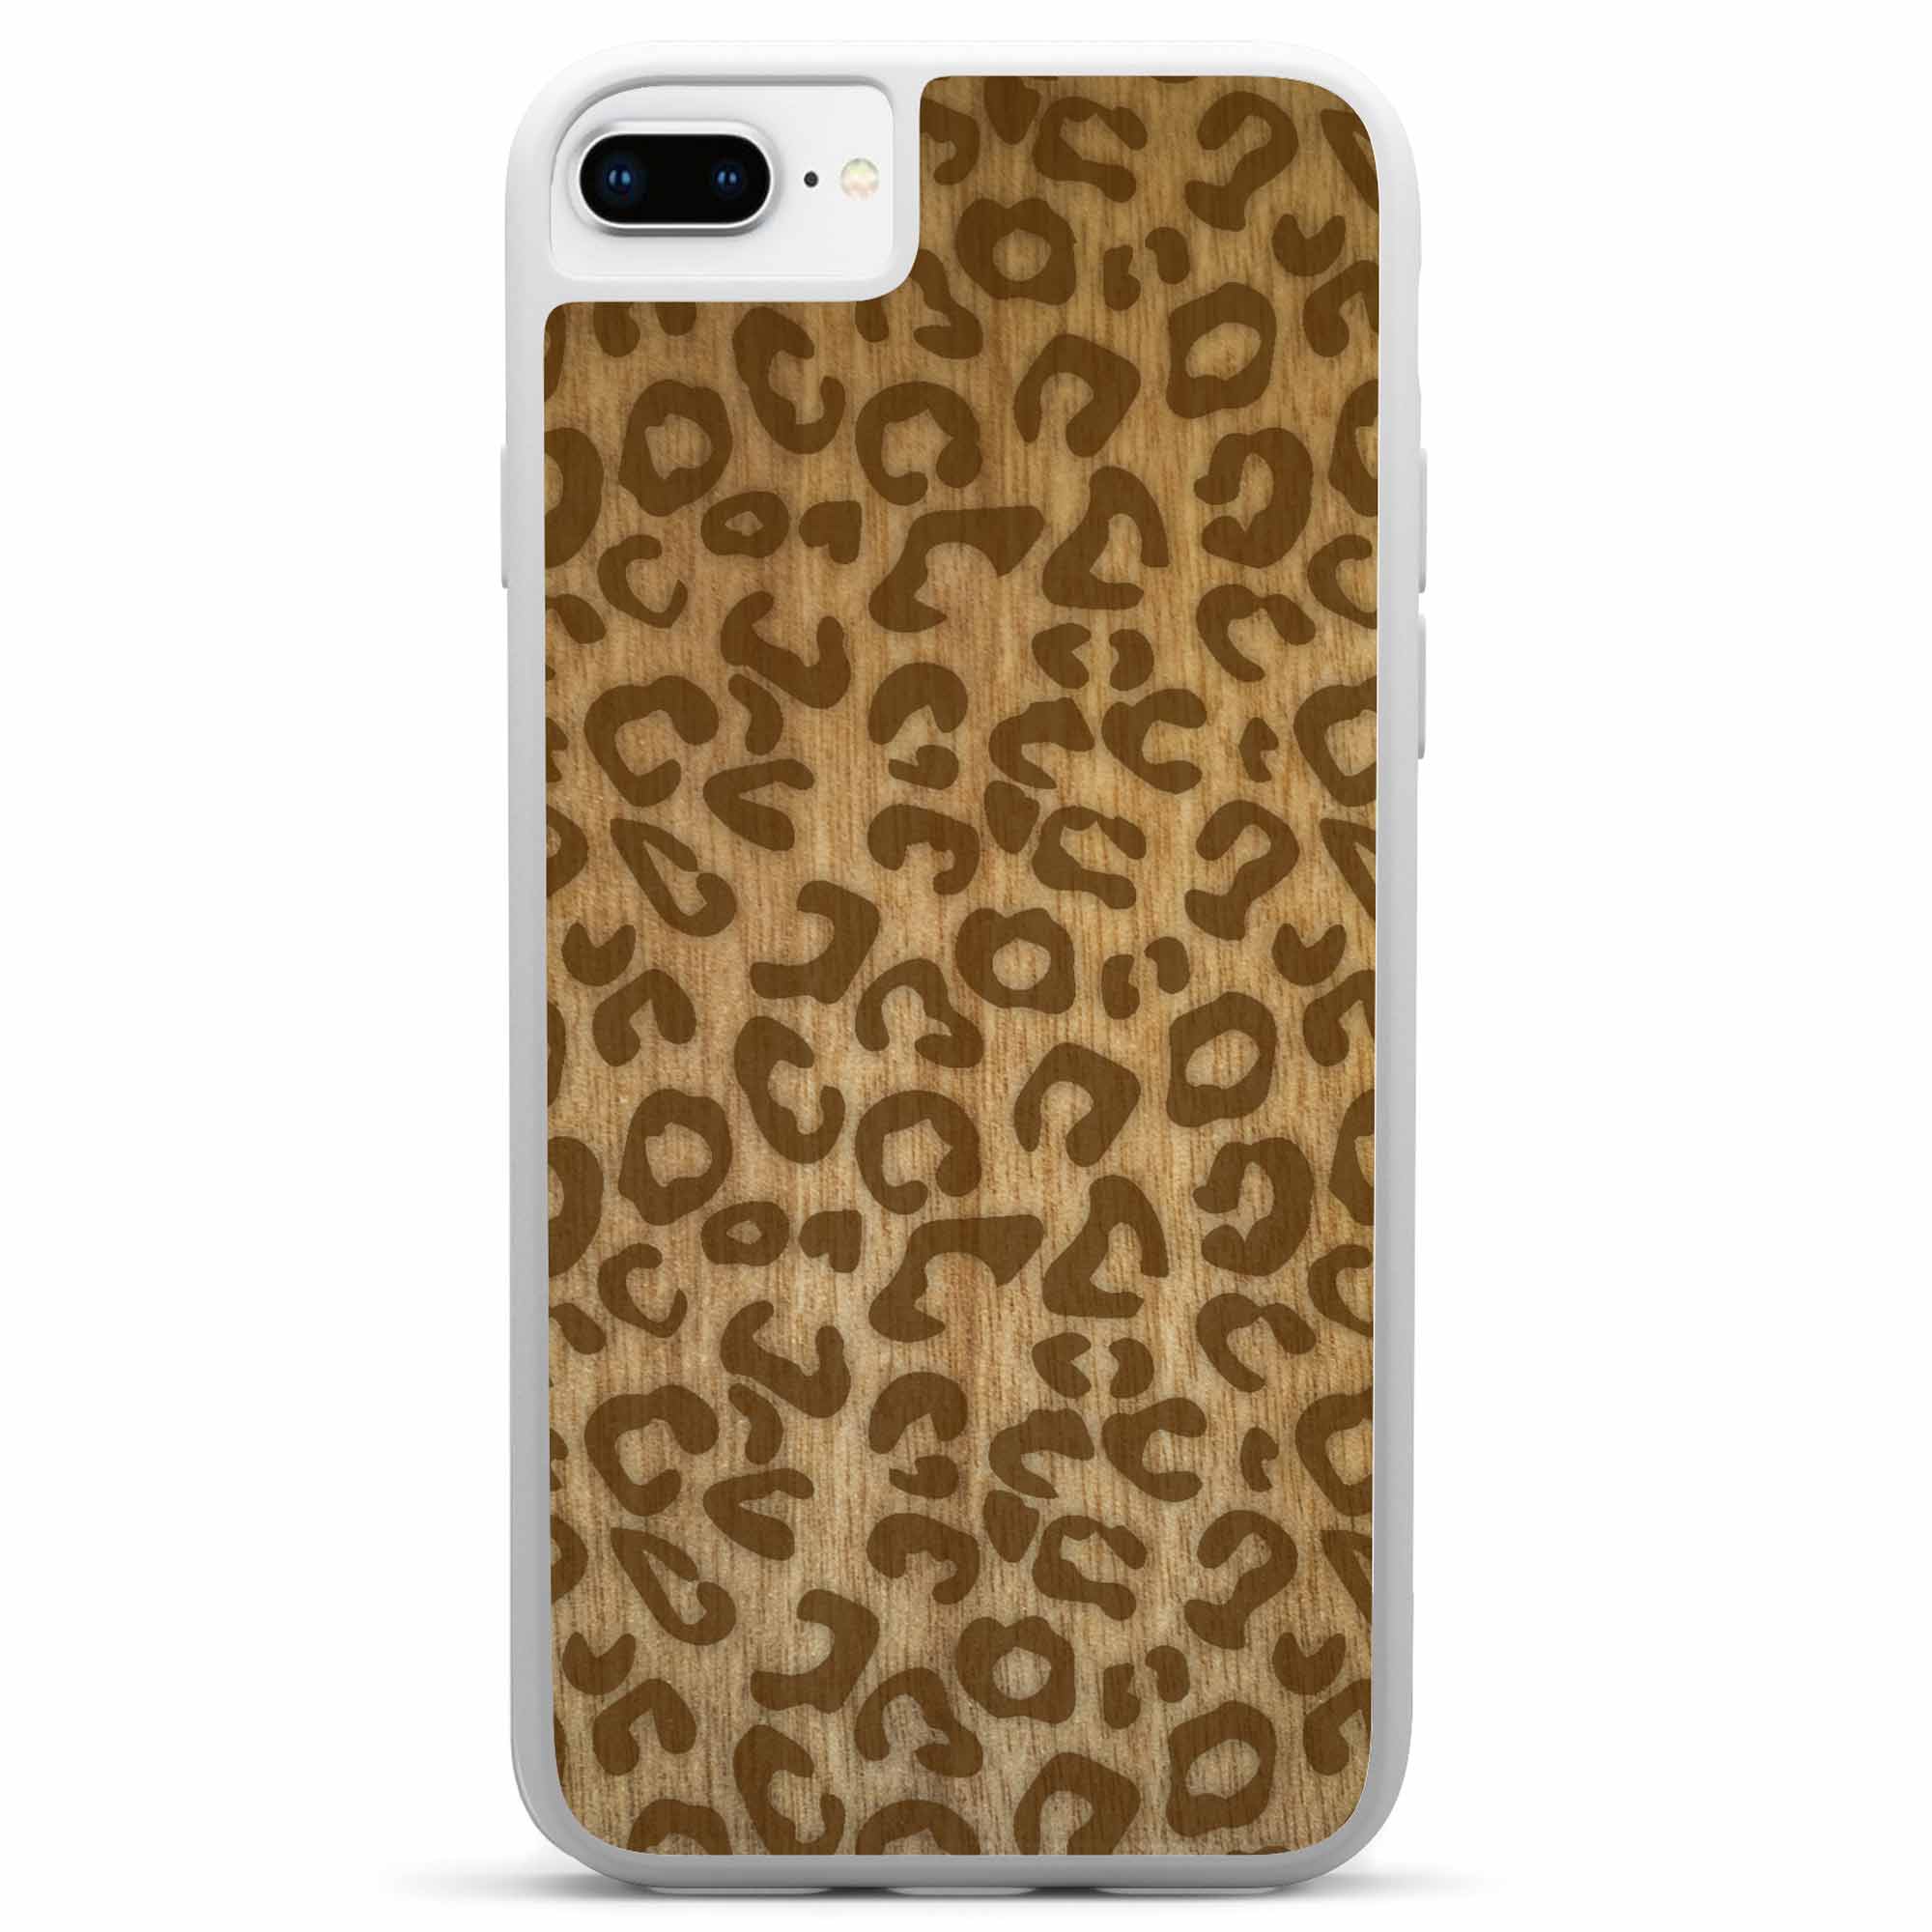 iPhone 8 Plus Holz-weiße Handyhülle mit Cheetah-Print